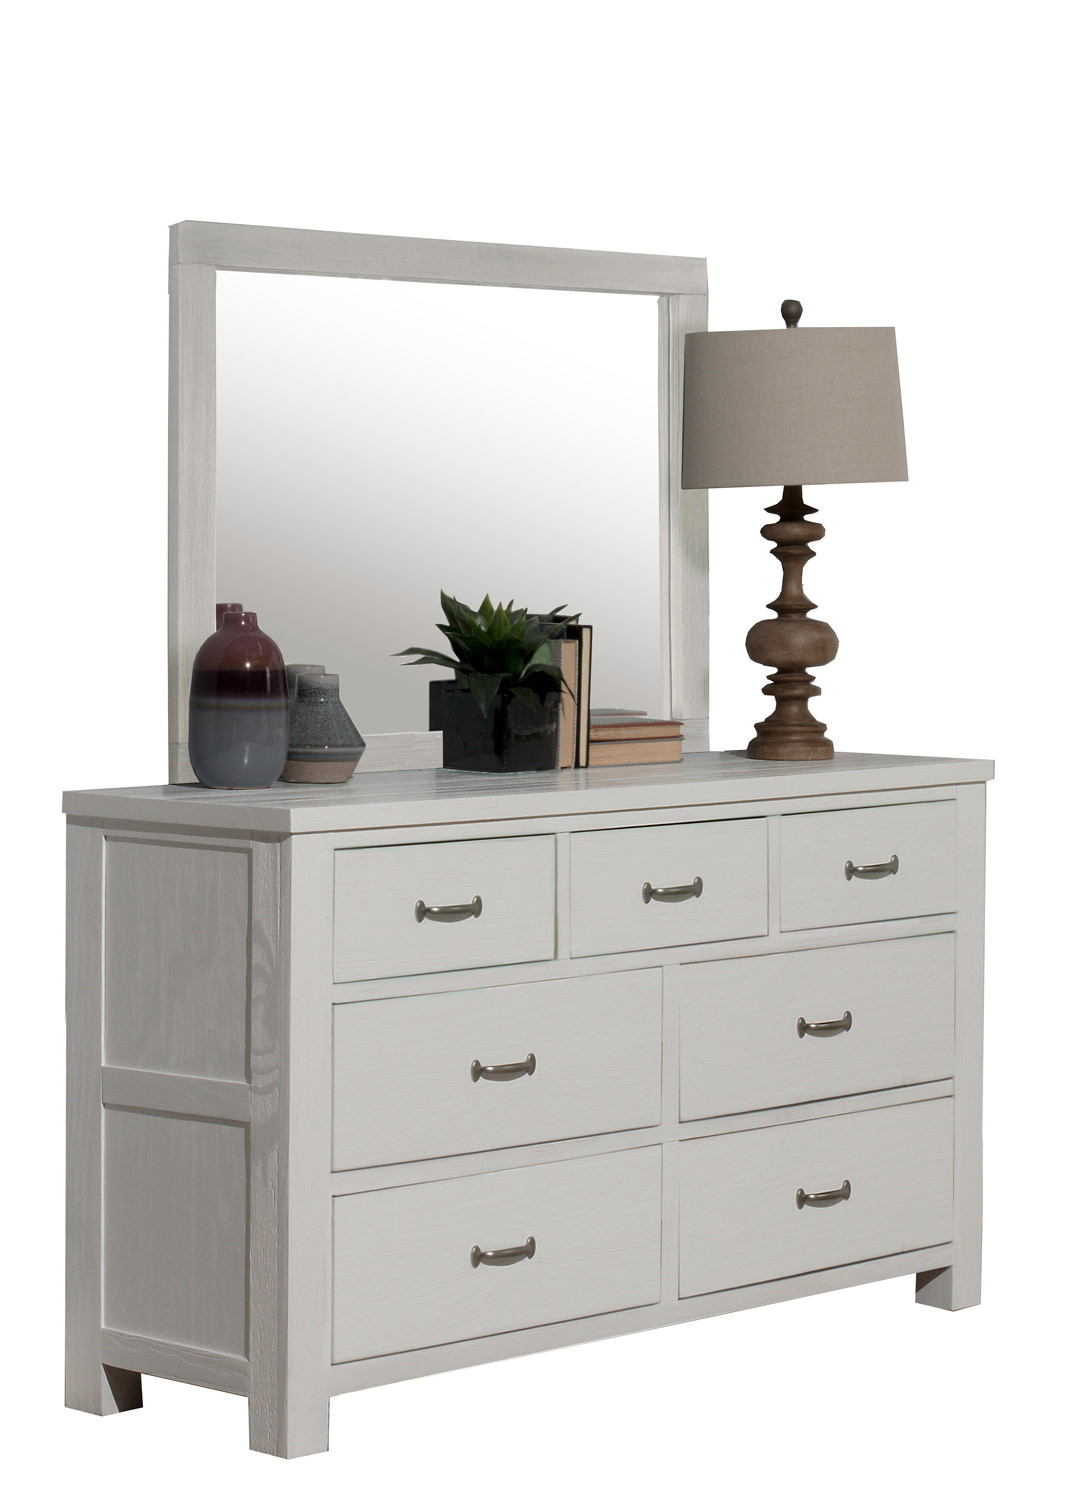 NE Kids Highlands 7 Drawer Dresser with Mirror - White Finish